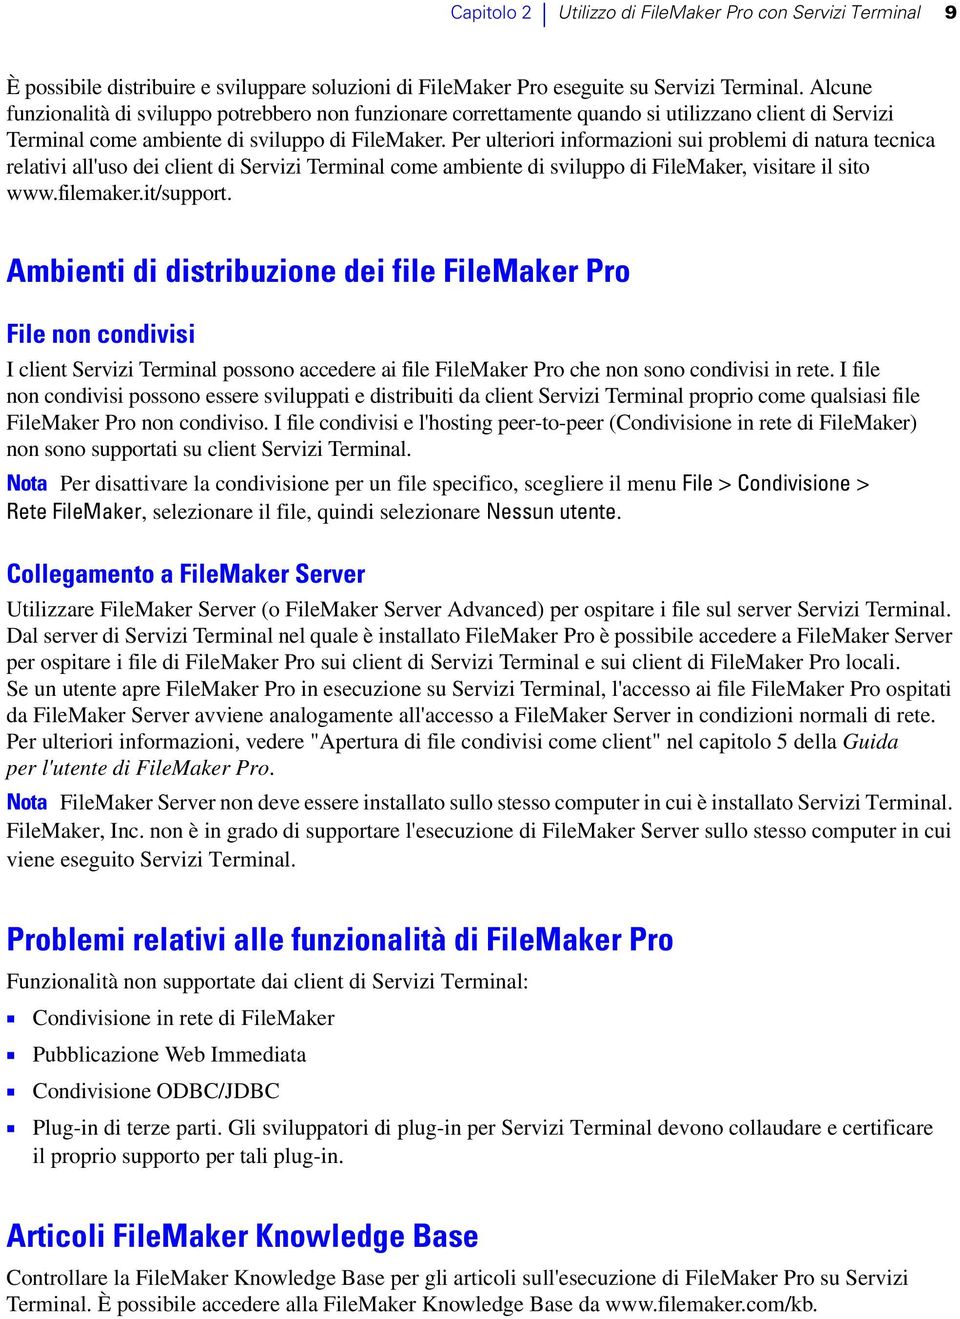 Per ulteriori informazioni sui problemi di natura tecnica relativi all'uso dei client di Servizi Terminal come ambiente di sviluppo di FileMaker, visitare il sito www.filemaker.it/support.